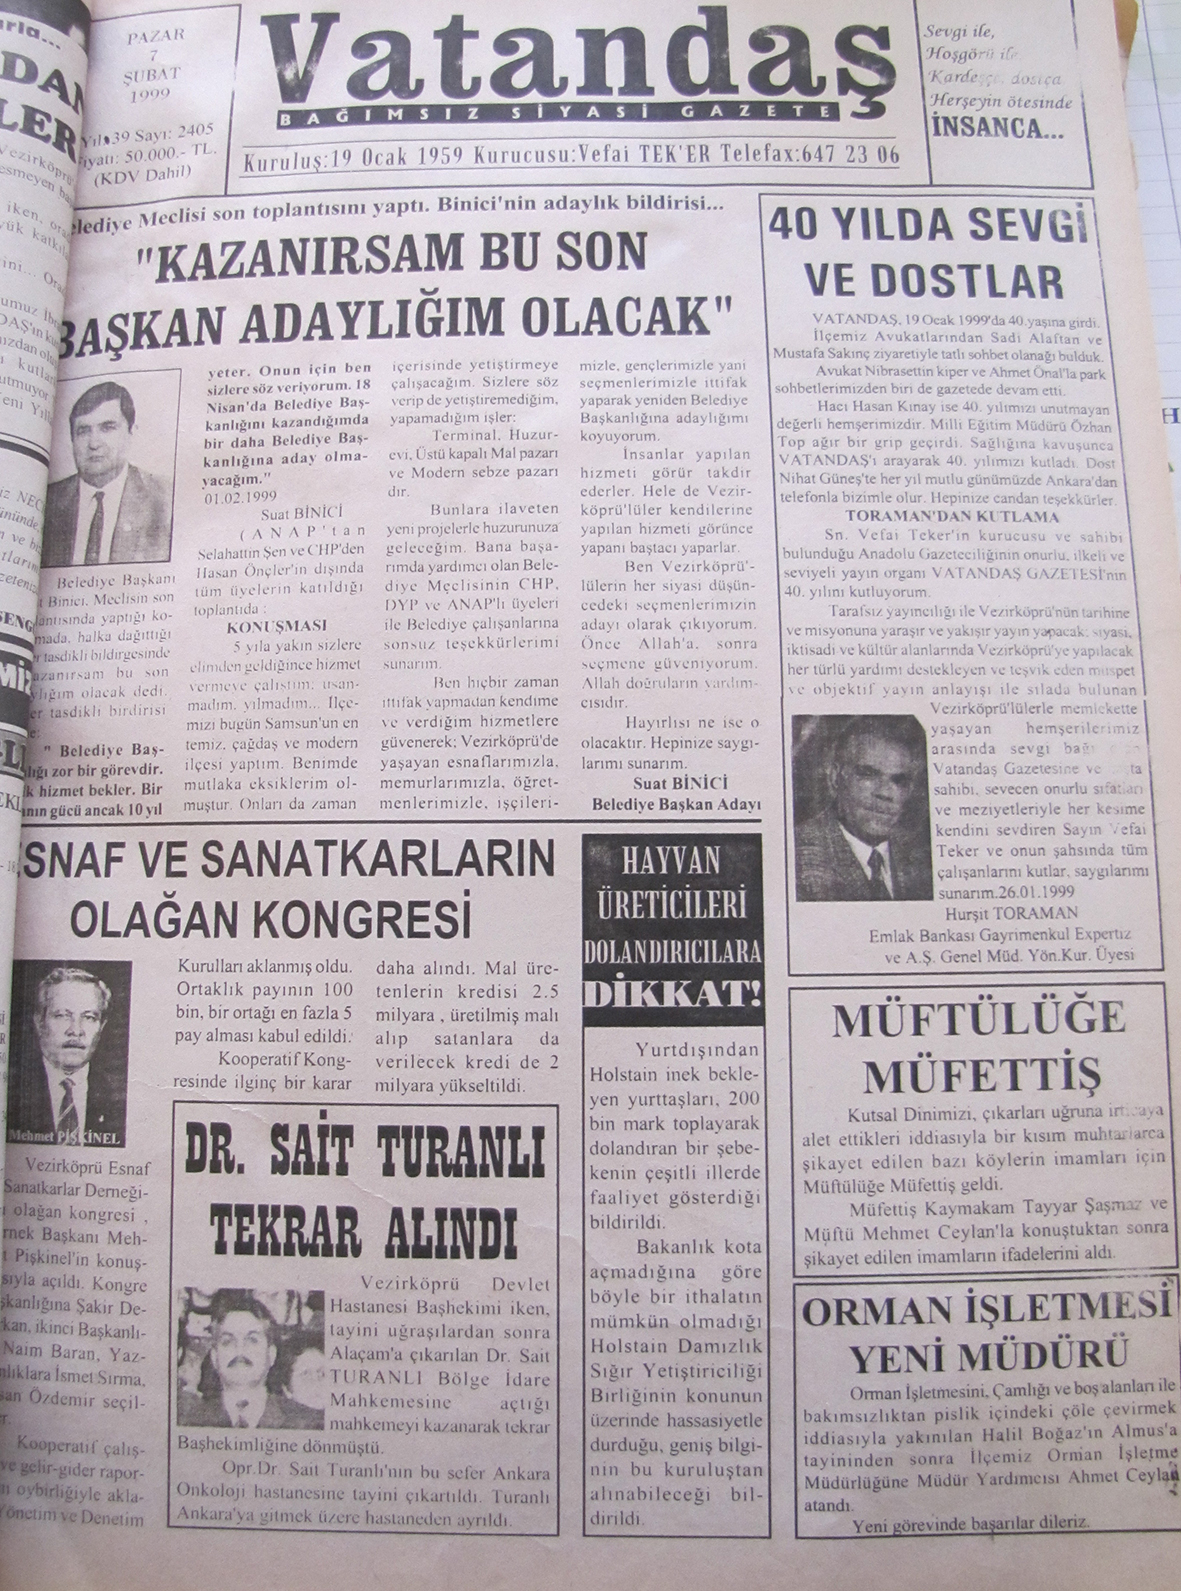 Belediye meclisi son toplantısını yaptı. Binici’nin adaylık bildirisi… “Kazanırsam Bu Son Başkan Adaylığım Olacak” 7 Şubat 1999 Pazar